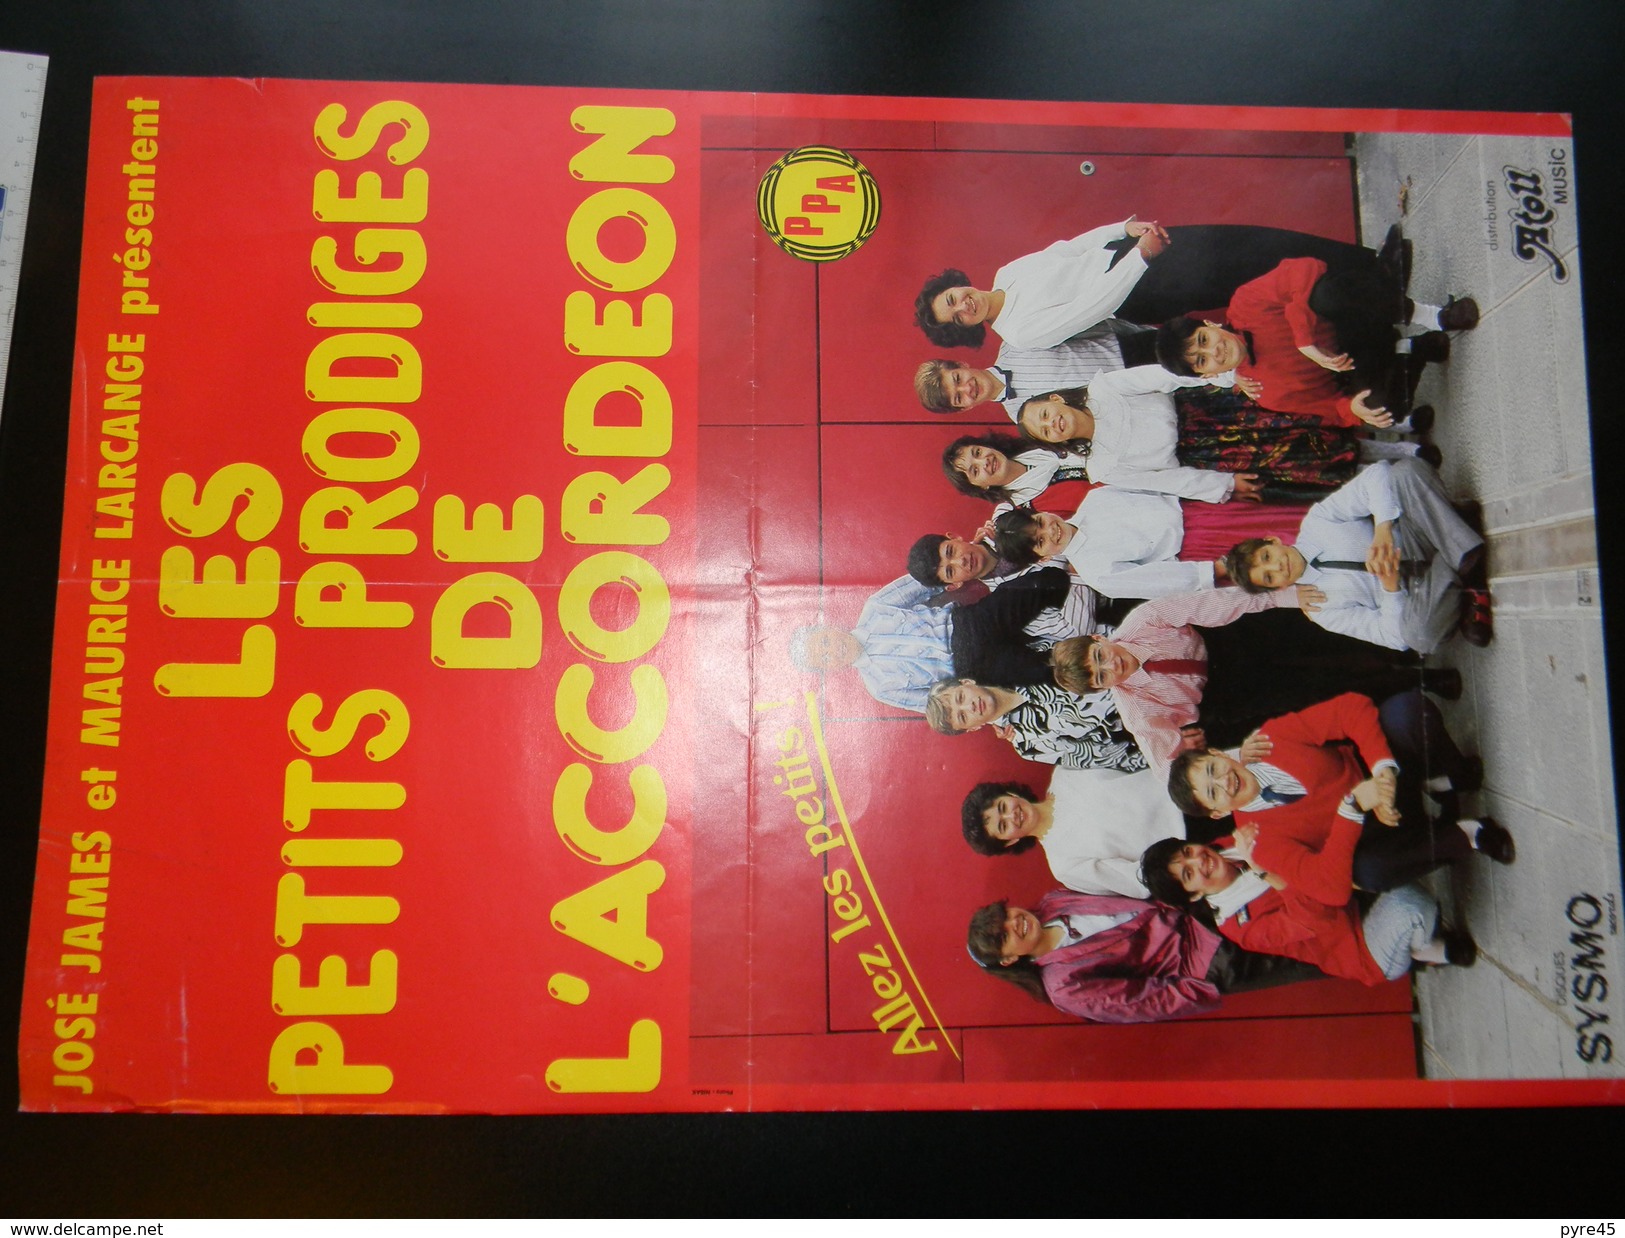 Affichette Les Petits Prodiges De L'accordeon 59 X 39 Cm - Affiches & Posters